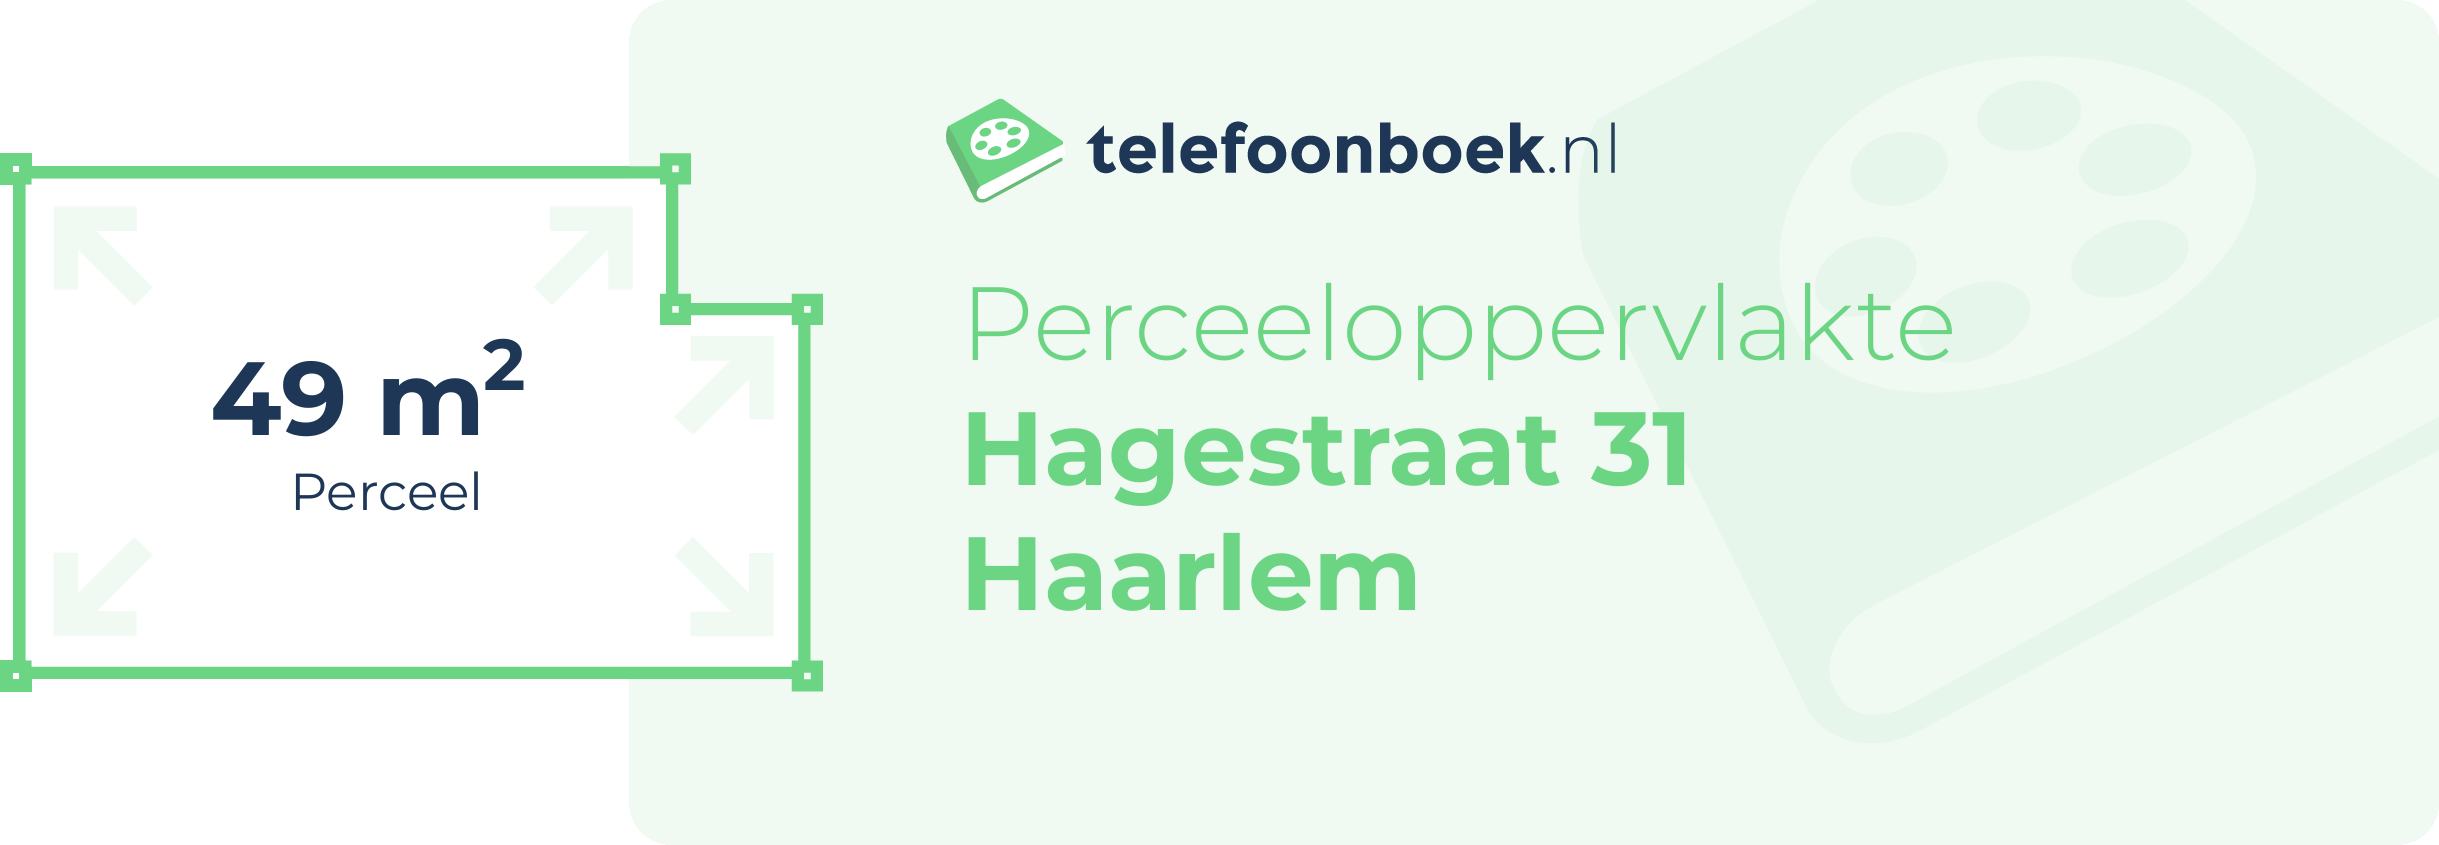 Perceeloppervlakte Hagestraat 31 Haarlem